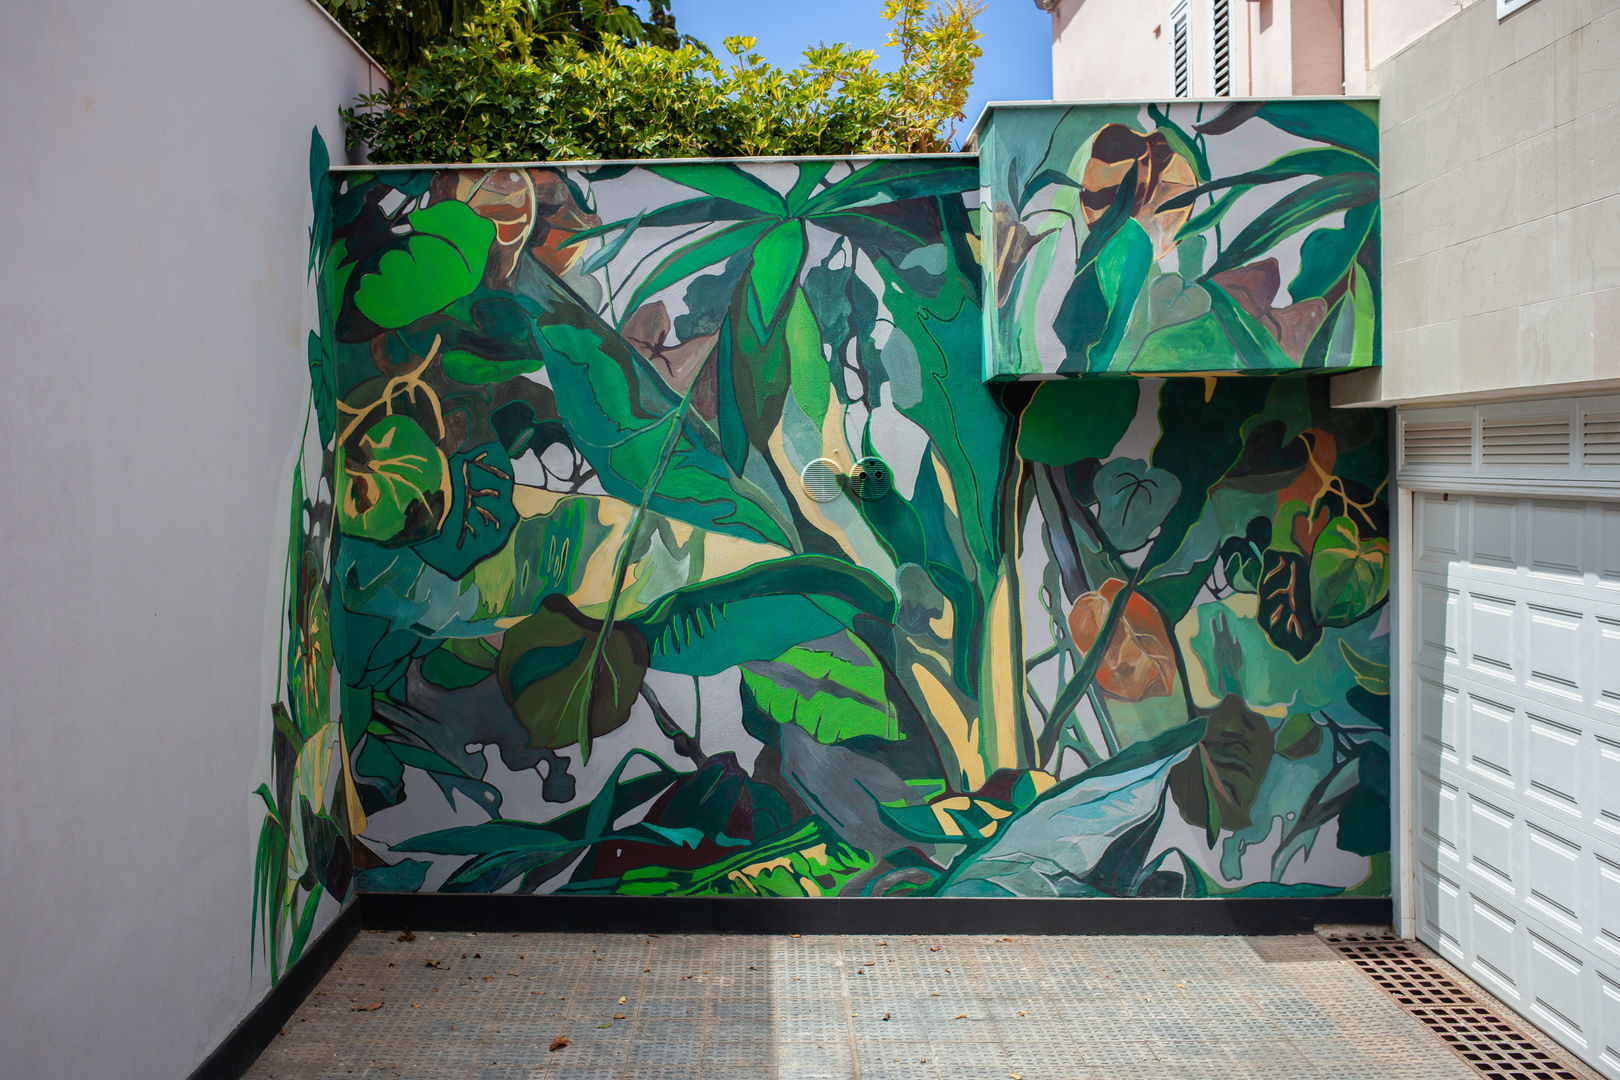 Wall painting "Tropical Garden", Diseño Libre Diseño Libre Tường & sàn phong cách nhiệt đới